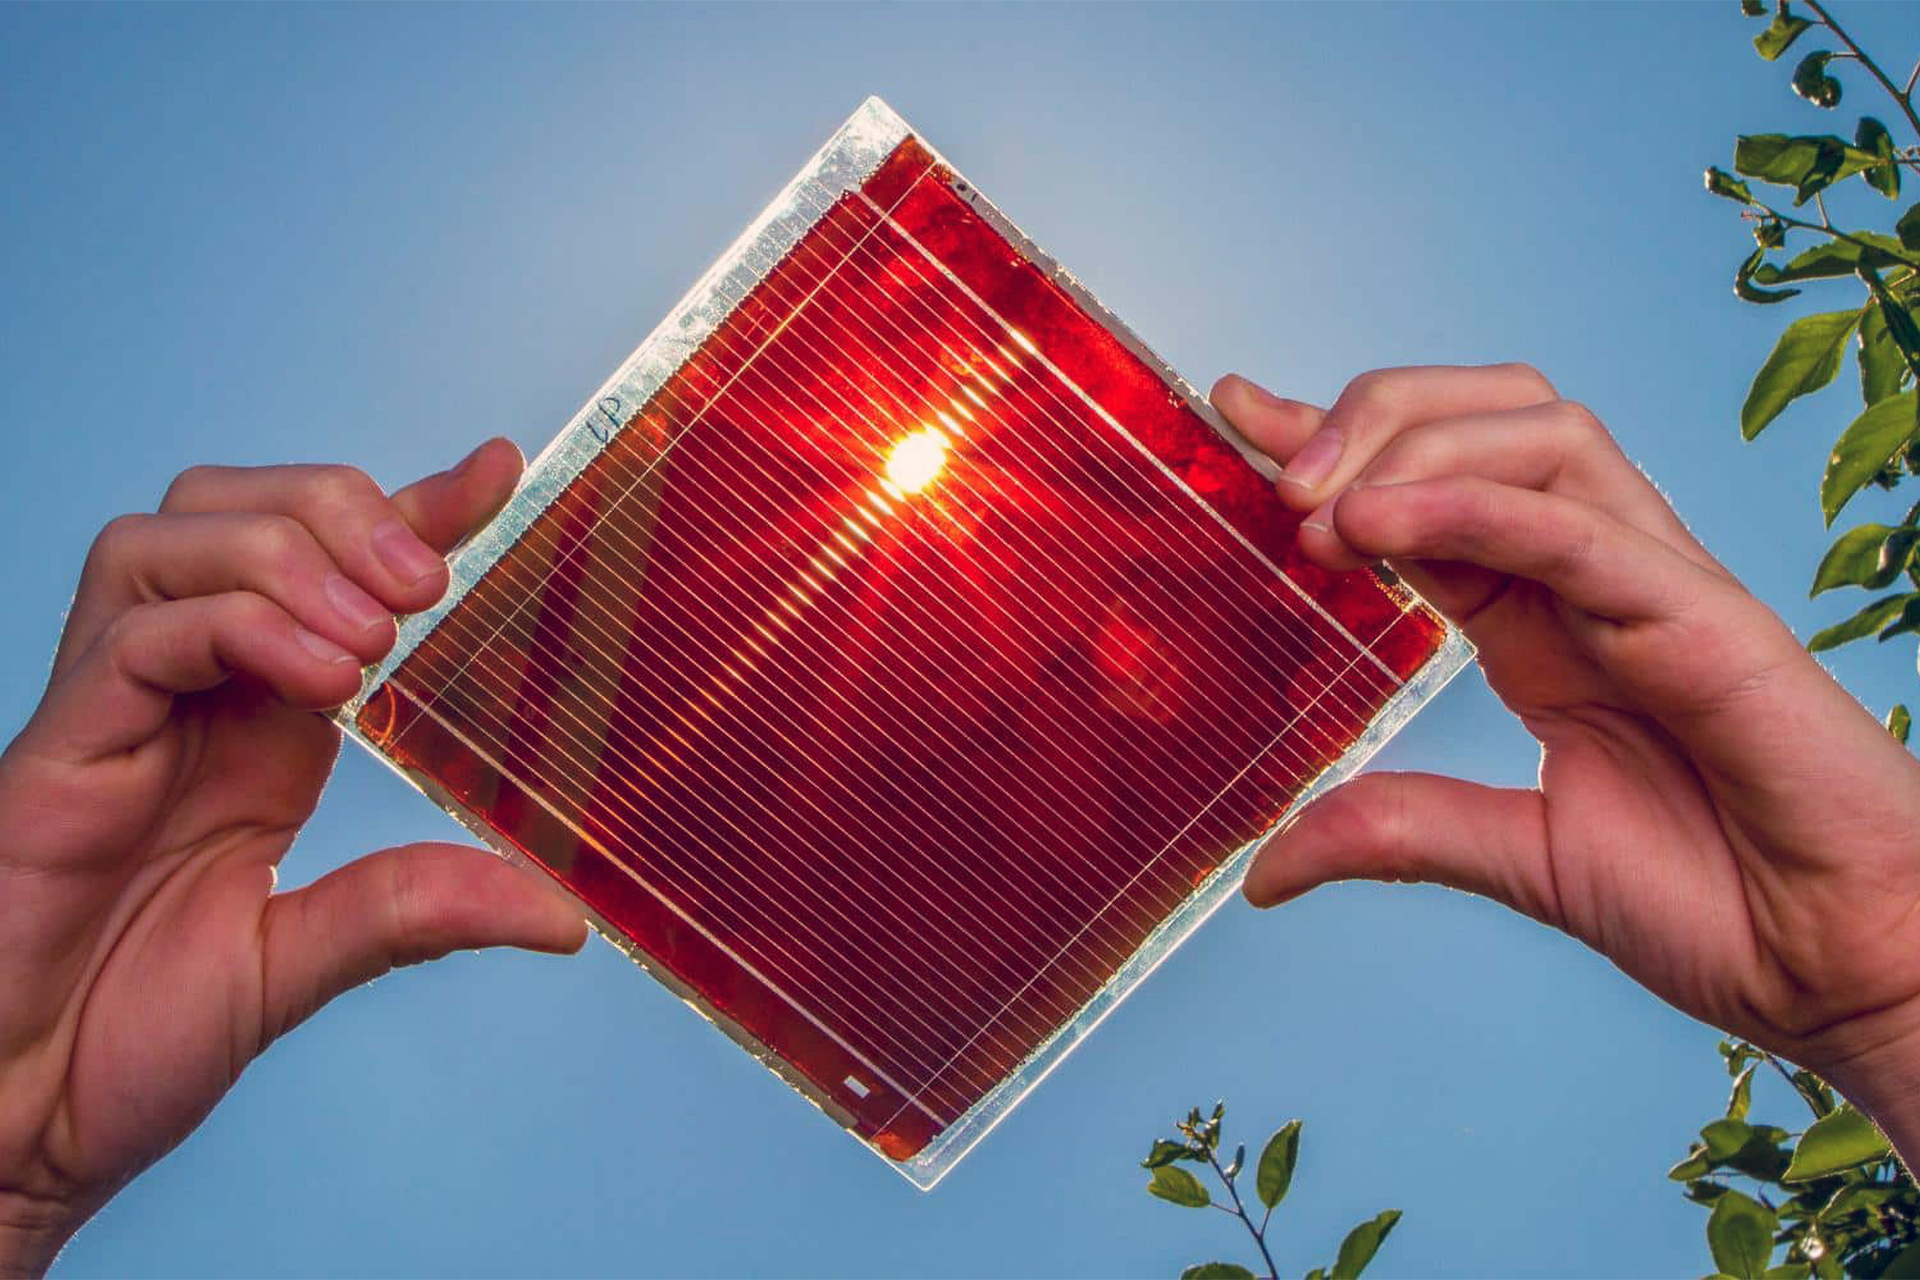 “Película Milagrosa” de perovskita revoluciona a geração de Energia Solar e ultrapassa barreira dos 30% de eficiência energética com células solares